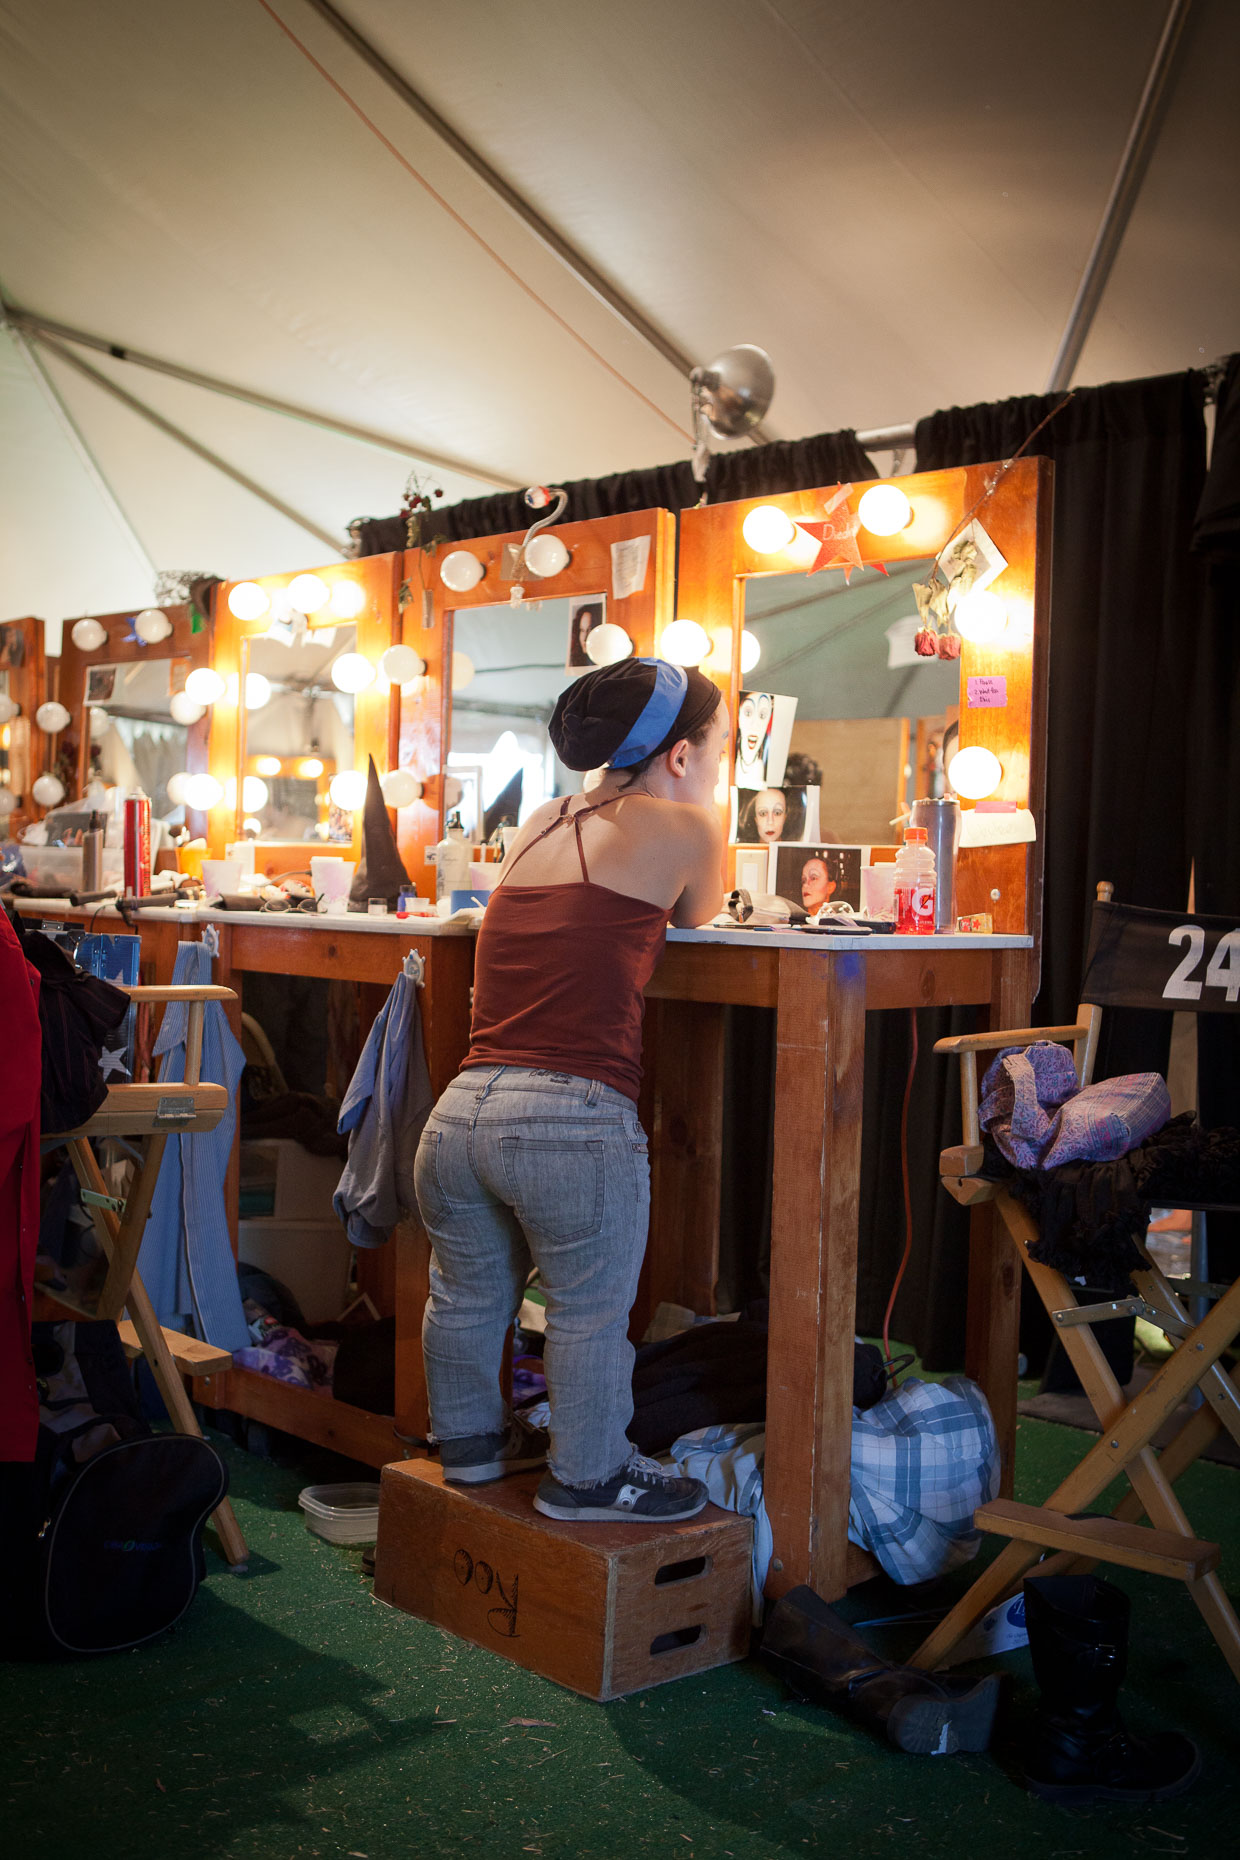 Little person applies makeup  at Cirque Berzerk circus performers, by David Zaitz